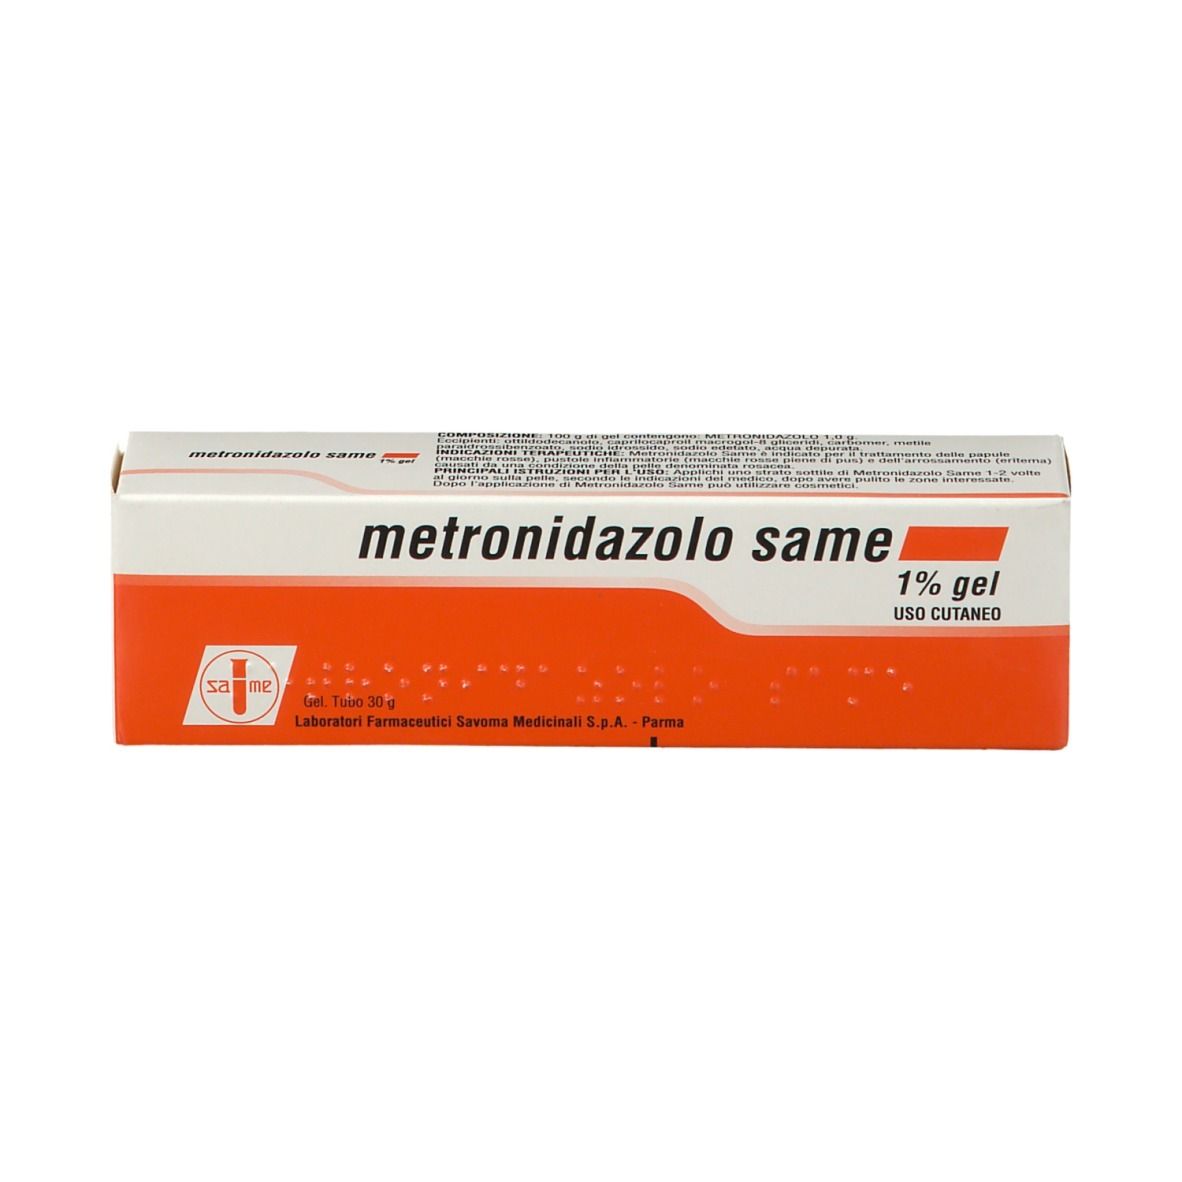 metronidazolo same 1% Gel